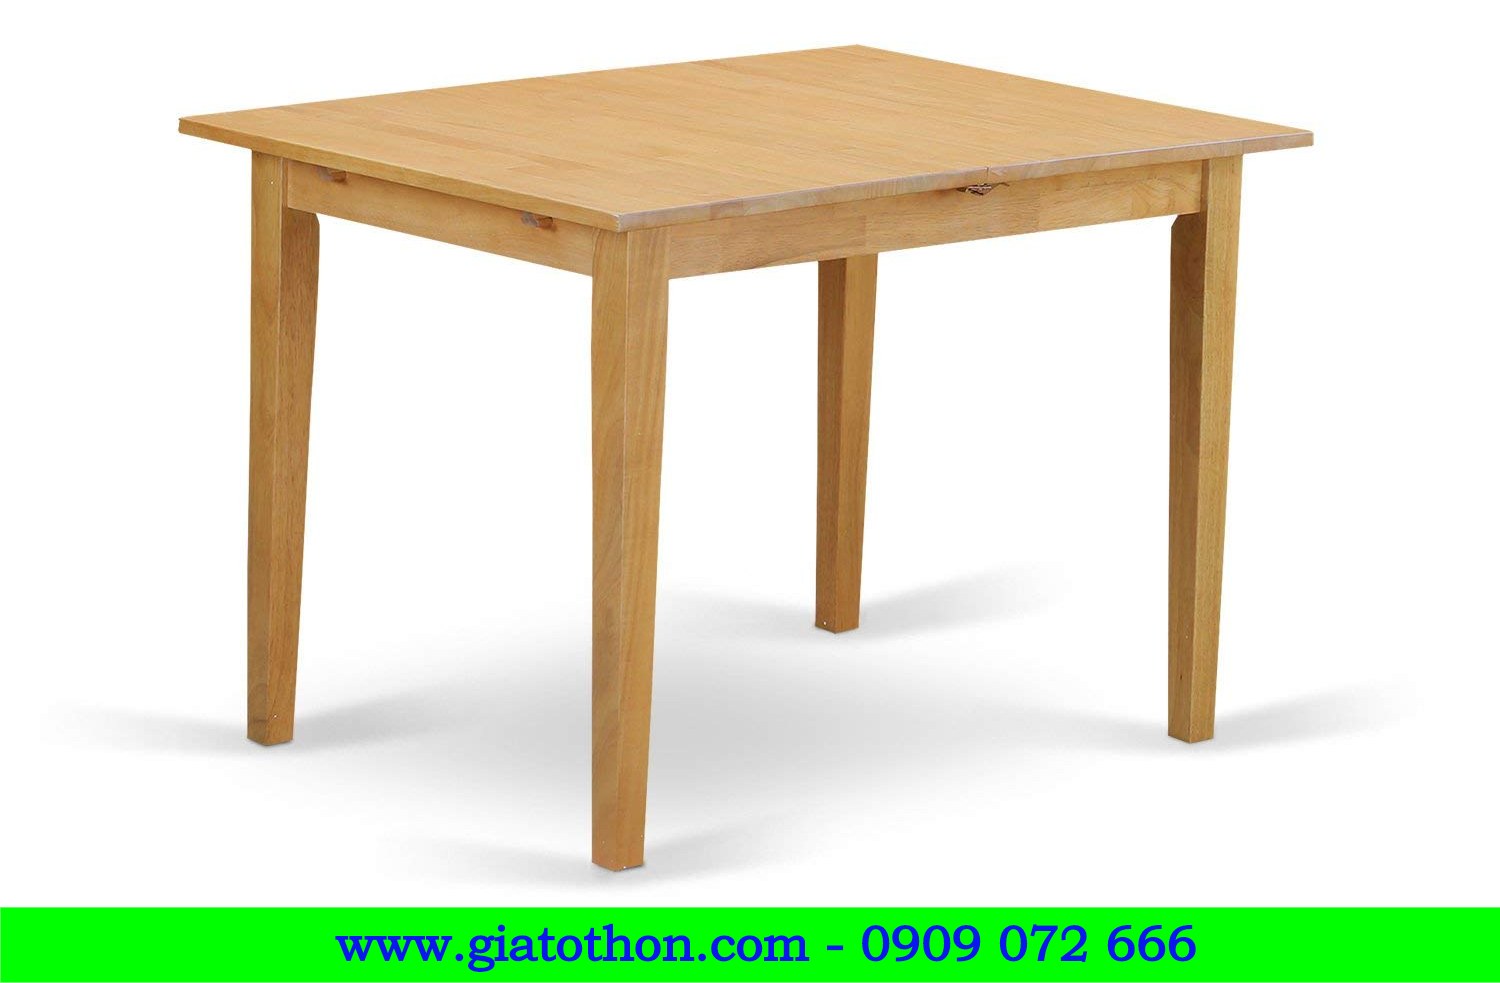 bàn ghế nhà hàng, bàn ghế gỗ trong nhà, bàn ghế nhà ăn, bàn ghế gỗ cho nhà bếp, bàn ghế gỗ nhà ăn giá rẻ, chuyên sản xuất bàn ghế gỗ nhà ăn, chuyên sản xuất bàn ghế gỗ cho nhà hàng